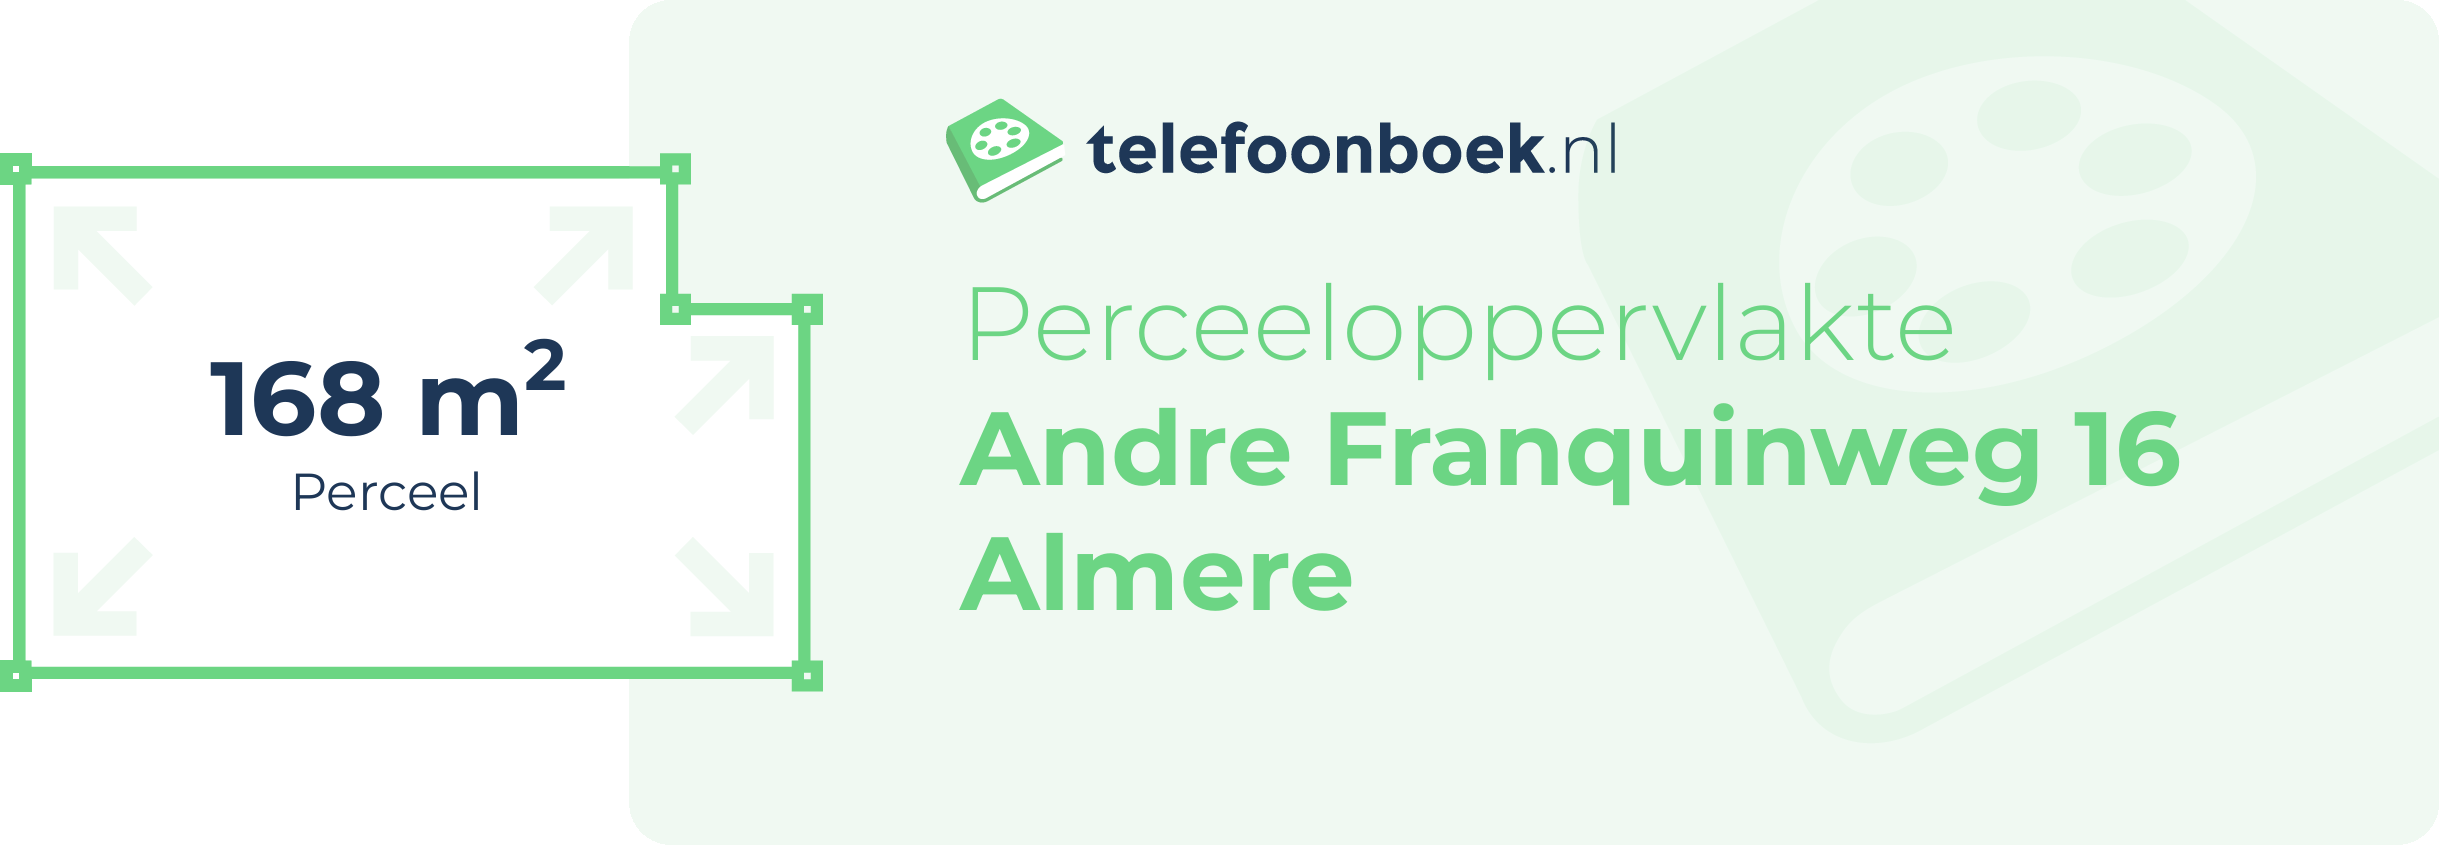 Perceeloppervlakte Andre Franquinweg 16 Almere